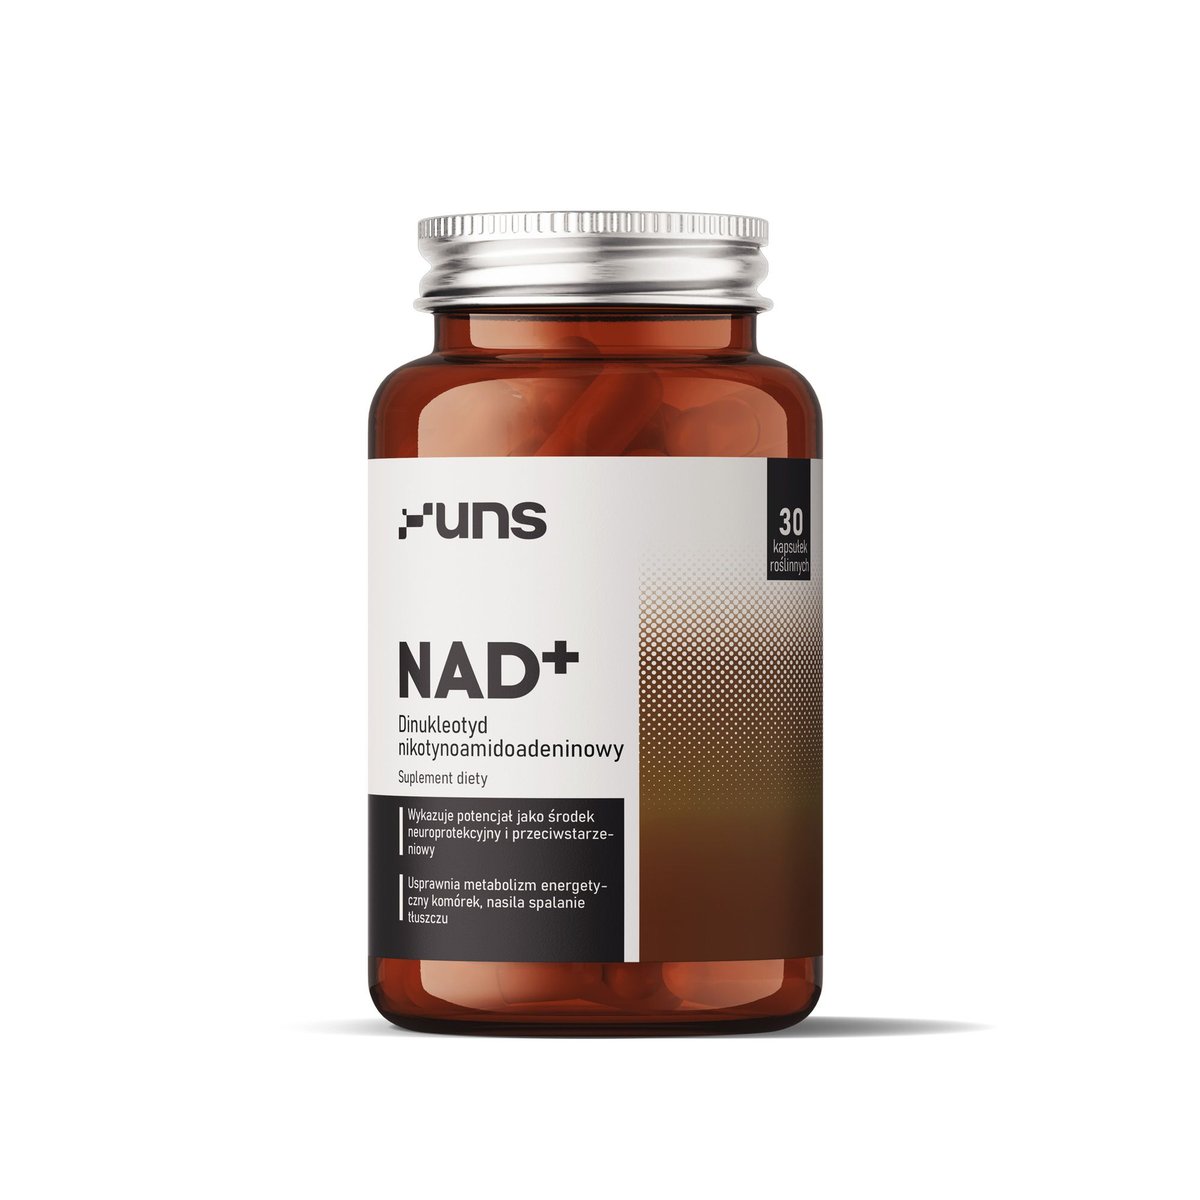 Фото - Вітаміни й мінерали UNS Suplement diety, NAD+ dinukleotyd nikotynoamidoadeninowy 30 kaps. 